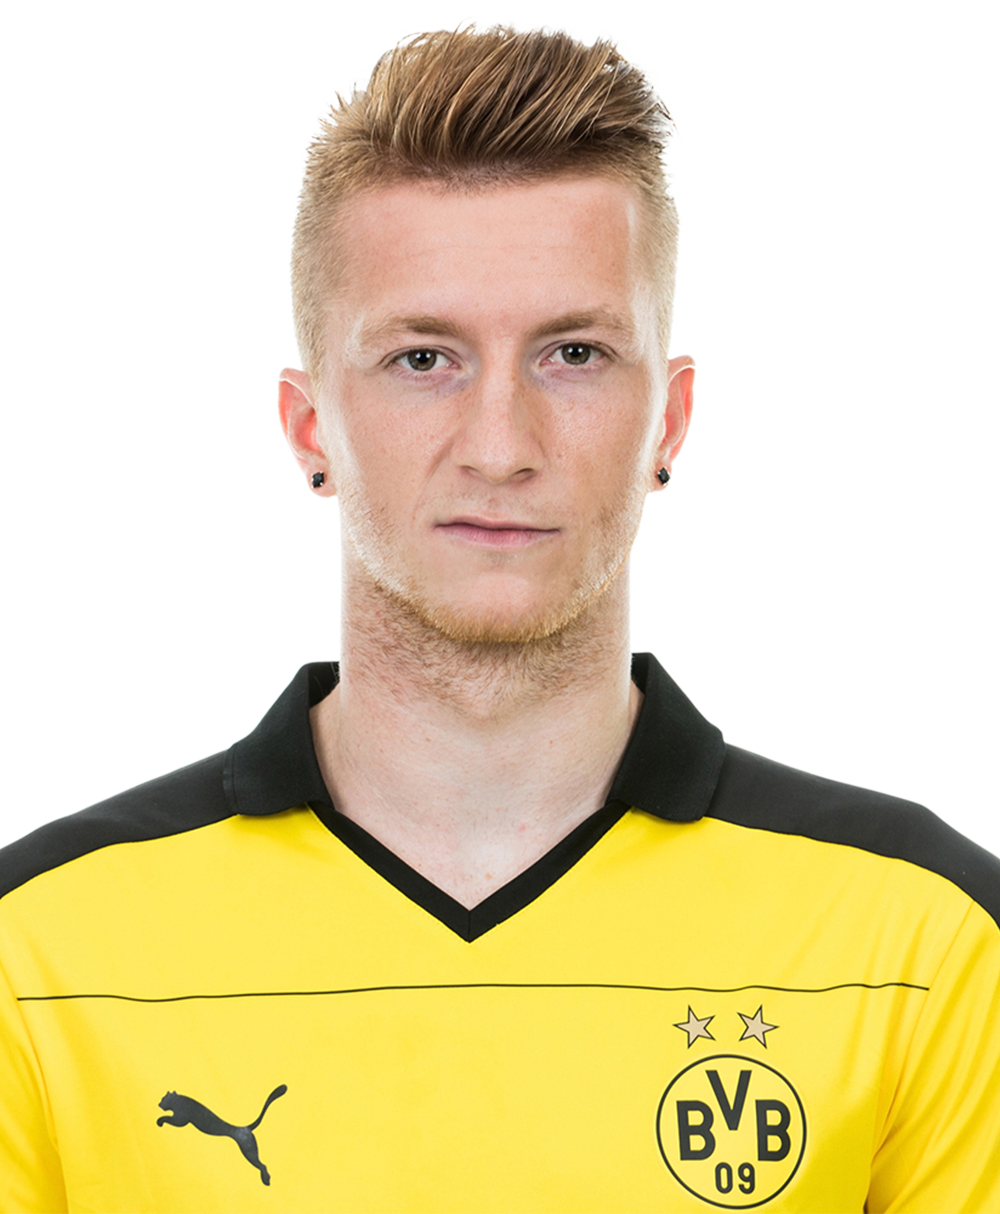 Mainz 1-1 Borussia Dortmund (Jan 29, 2017) Game Analysis - ESPN